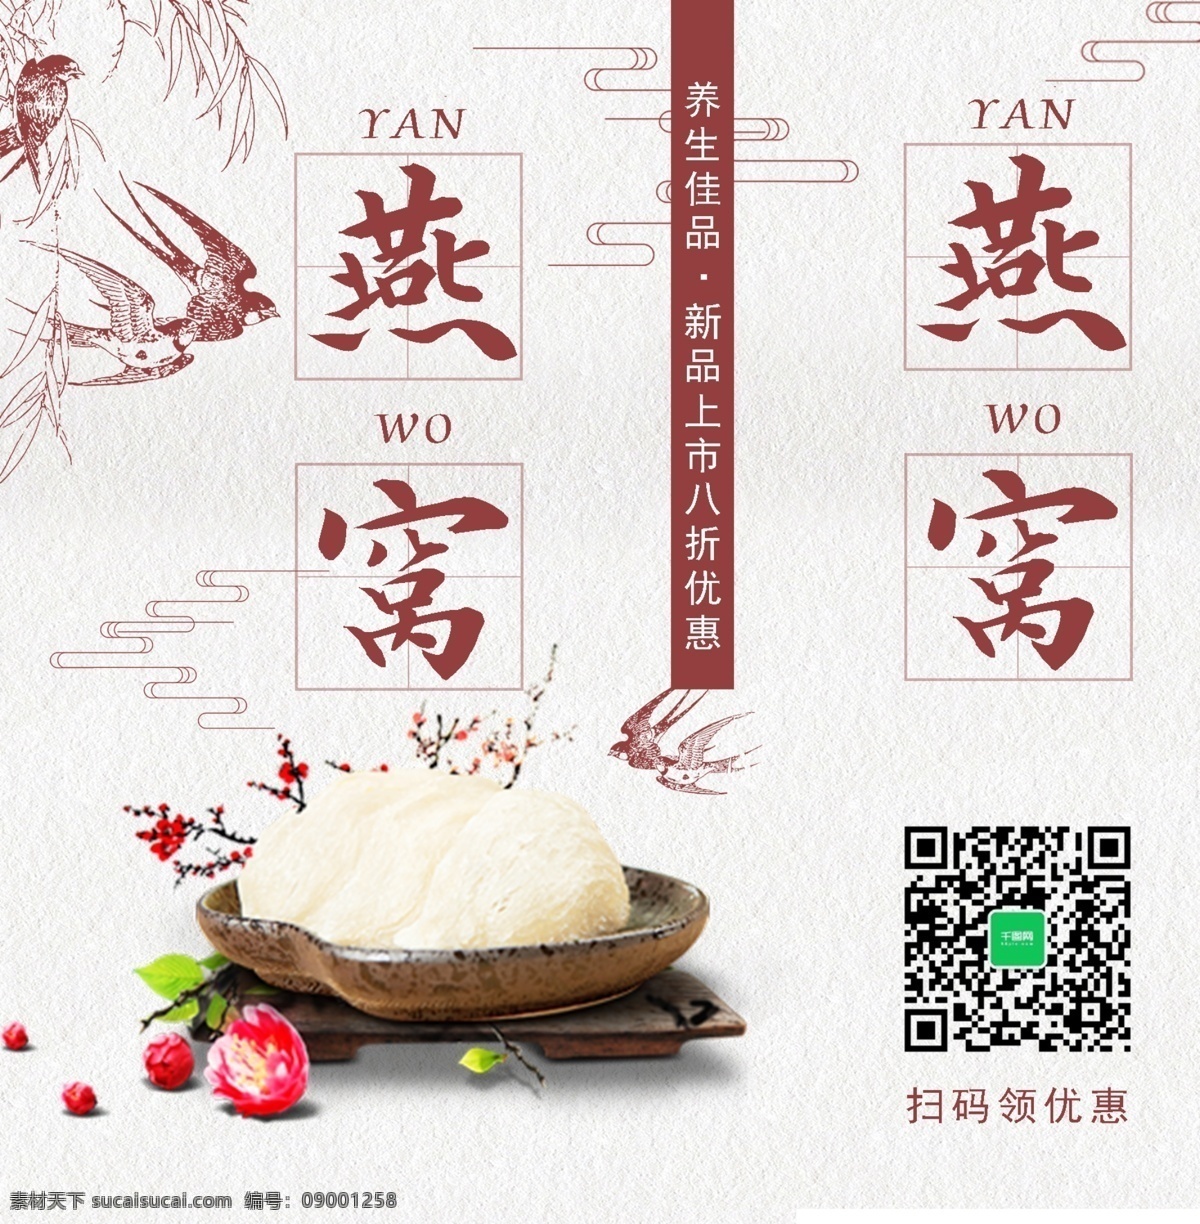 大气 美食 年货 燕窝 中国风 精品 手提袋 黄色 中国 风 美味 包装设计